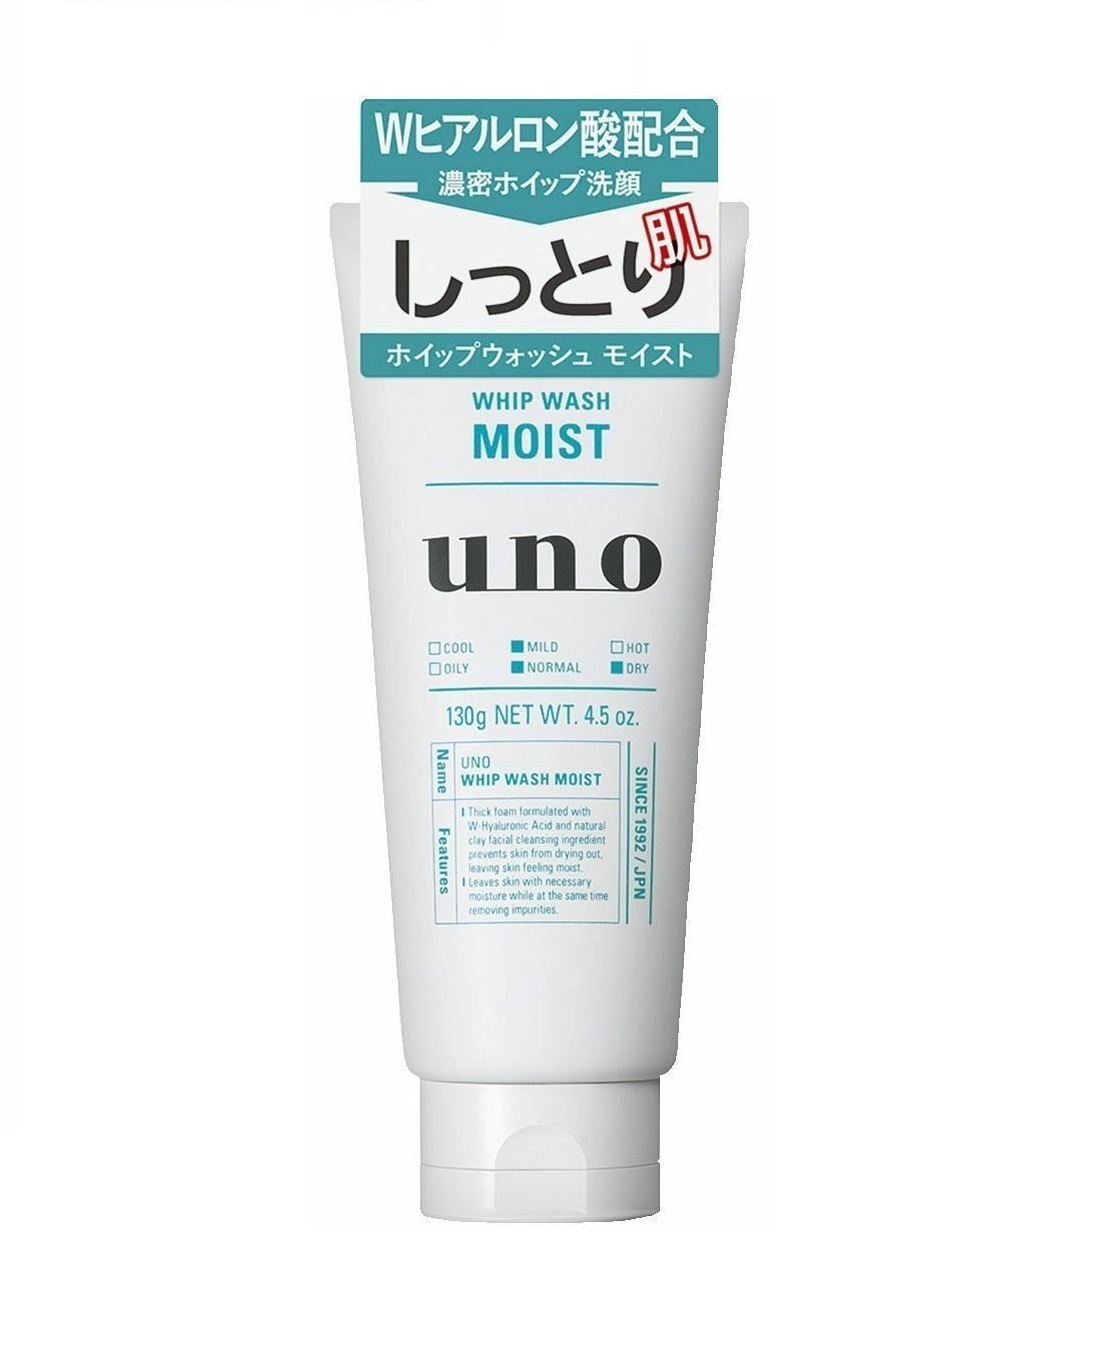 Увлажняющая мужская пенка для умывания на основе натуральной глины с гиалуроновой кислотой Shiseido UNO Whip wash, 130г